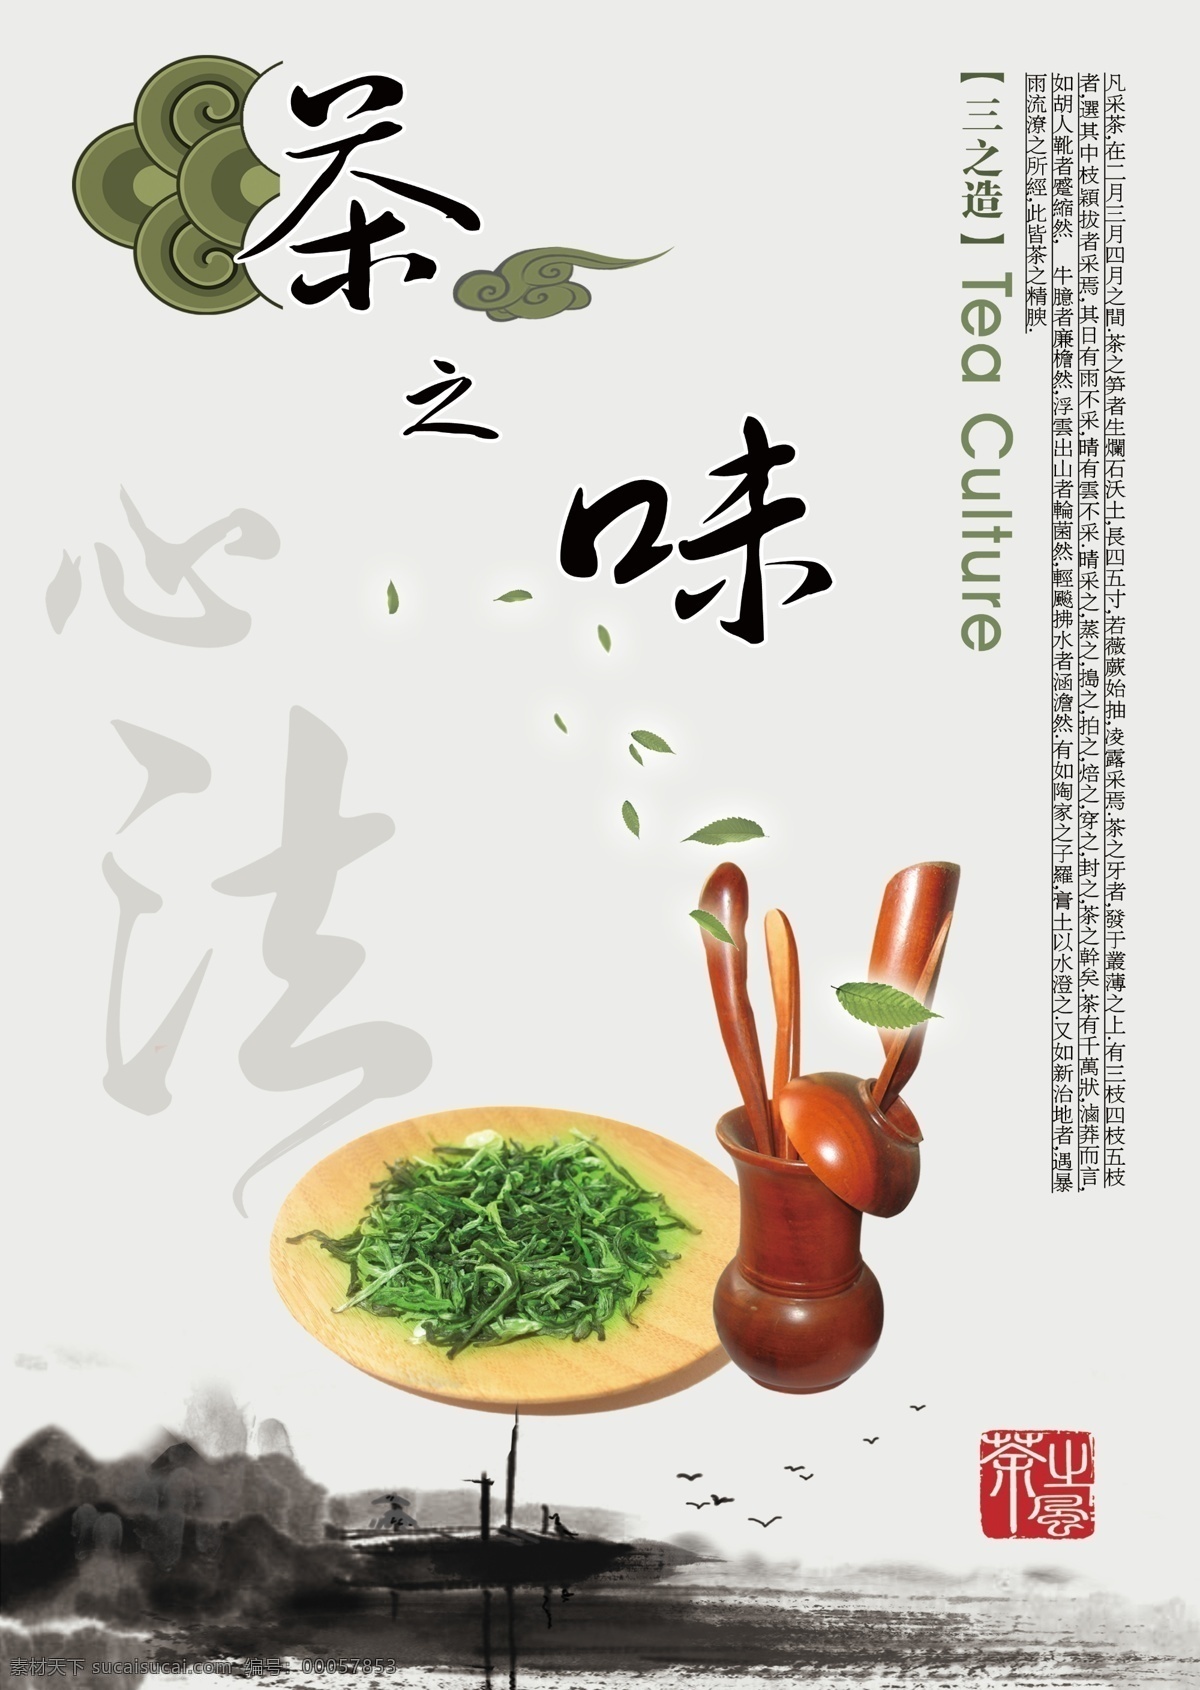 茶文化 展板 茶具 绿茶 祥云 中国风 茶之味 心法 其他展板设计